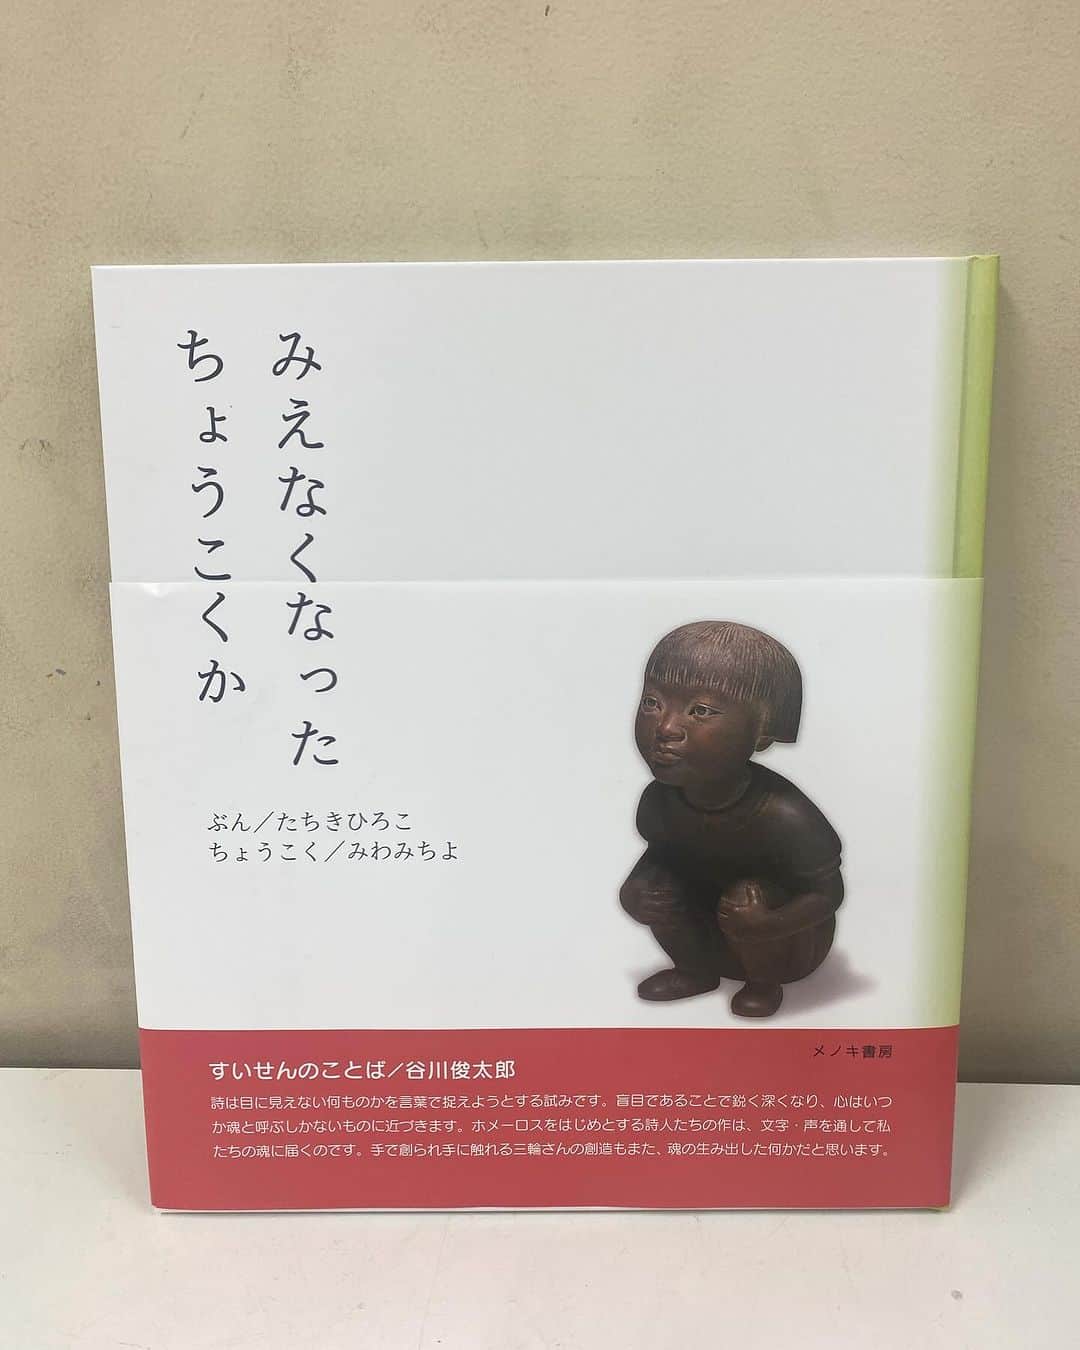 田添菜穂子のインスタグラム：「近所の小学校にて秋の読書週間読み聞かせ。 今日は3年生でした。  メノキ書房「みえなくなったちょうこくか」。  彫刻家の三輪途道（みわみちよ）さんの視力をなくすまでのこと、そしてなくしてから取り組んだ活動や感じている思いを立木寛子さんが綴っています。三輪さんが実際にその時々で作られた作品も文章とともに紹介されていてステキです。  先日、群馬での音楽ワークショップコンサートで、笙奏者の東野珠実 @tamami.tono さんが音楽とともに朗読なさり、最後には三輪さんご本人も一文を朗読されていて、ステキなご本だなと思い、取り寄せたのでした。  子どもたちは静かに熱心に聞いてくれて、感想を聞いたら「気持ちを切り替えられてすごいし、素敵だと思いました」と、一言で本質をついたことを言ってくれる生徒さんもいて、私が感動しました。  こうした絵本を介した心の触れ合いが、読み聞かせの醍醐味だなあ、と改めて。  #みえなくなったちょうこくか #みわみちよ #たちきひろこ #三輪途道 #立木寛子 #メノキ書房 #東野珠実」